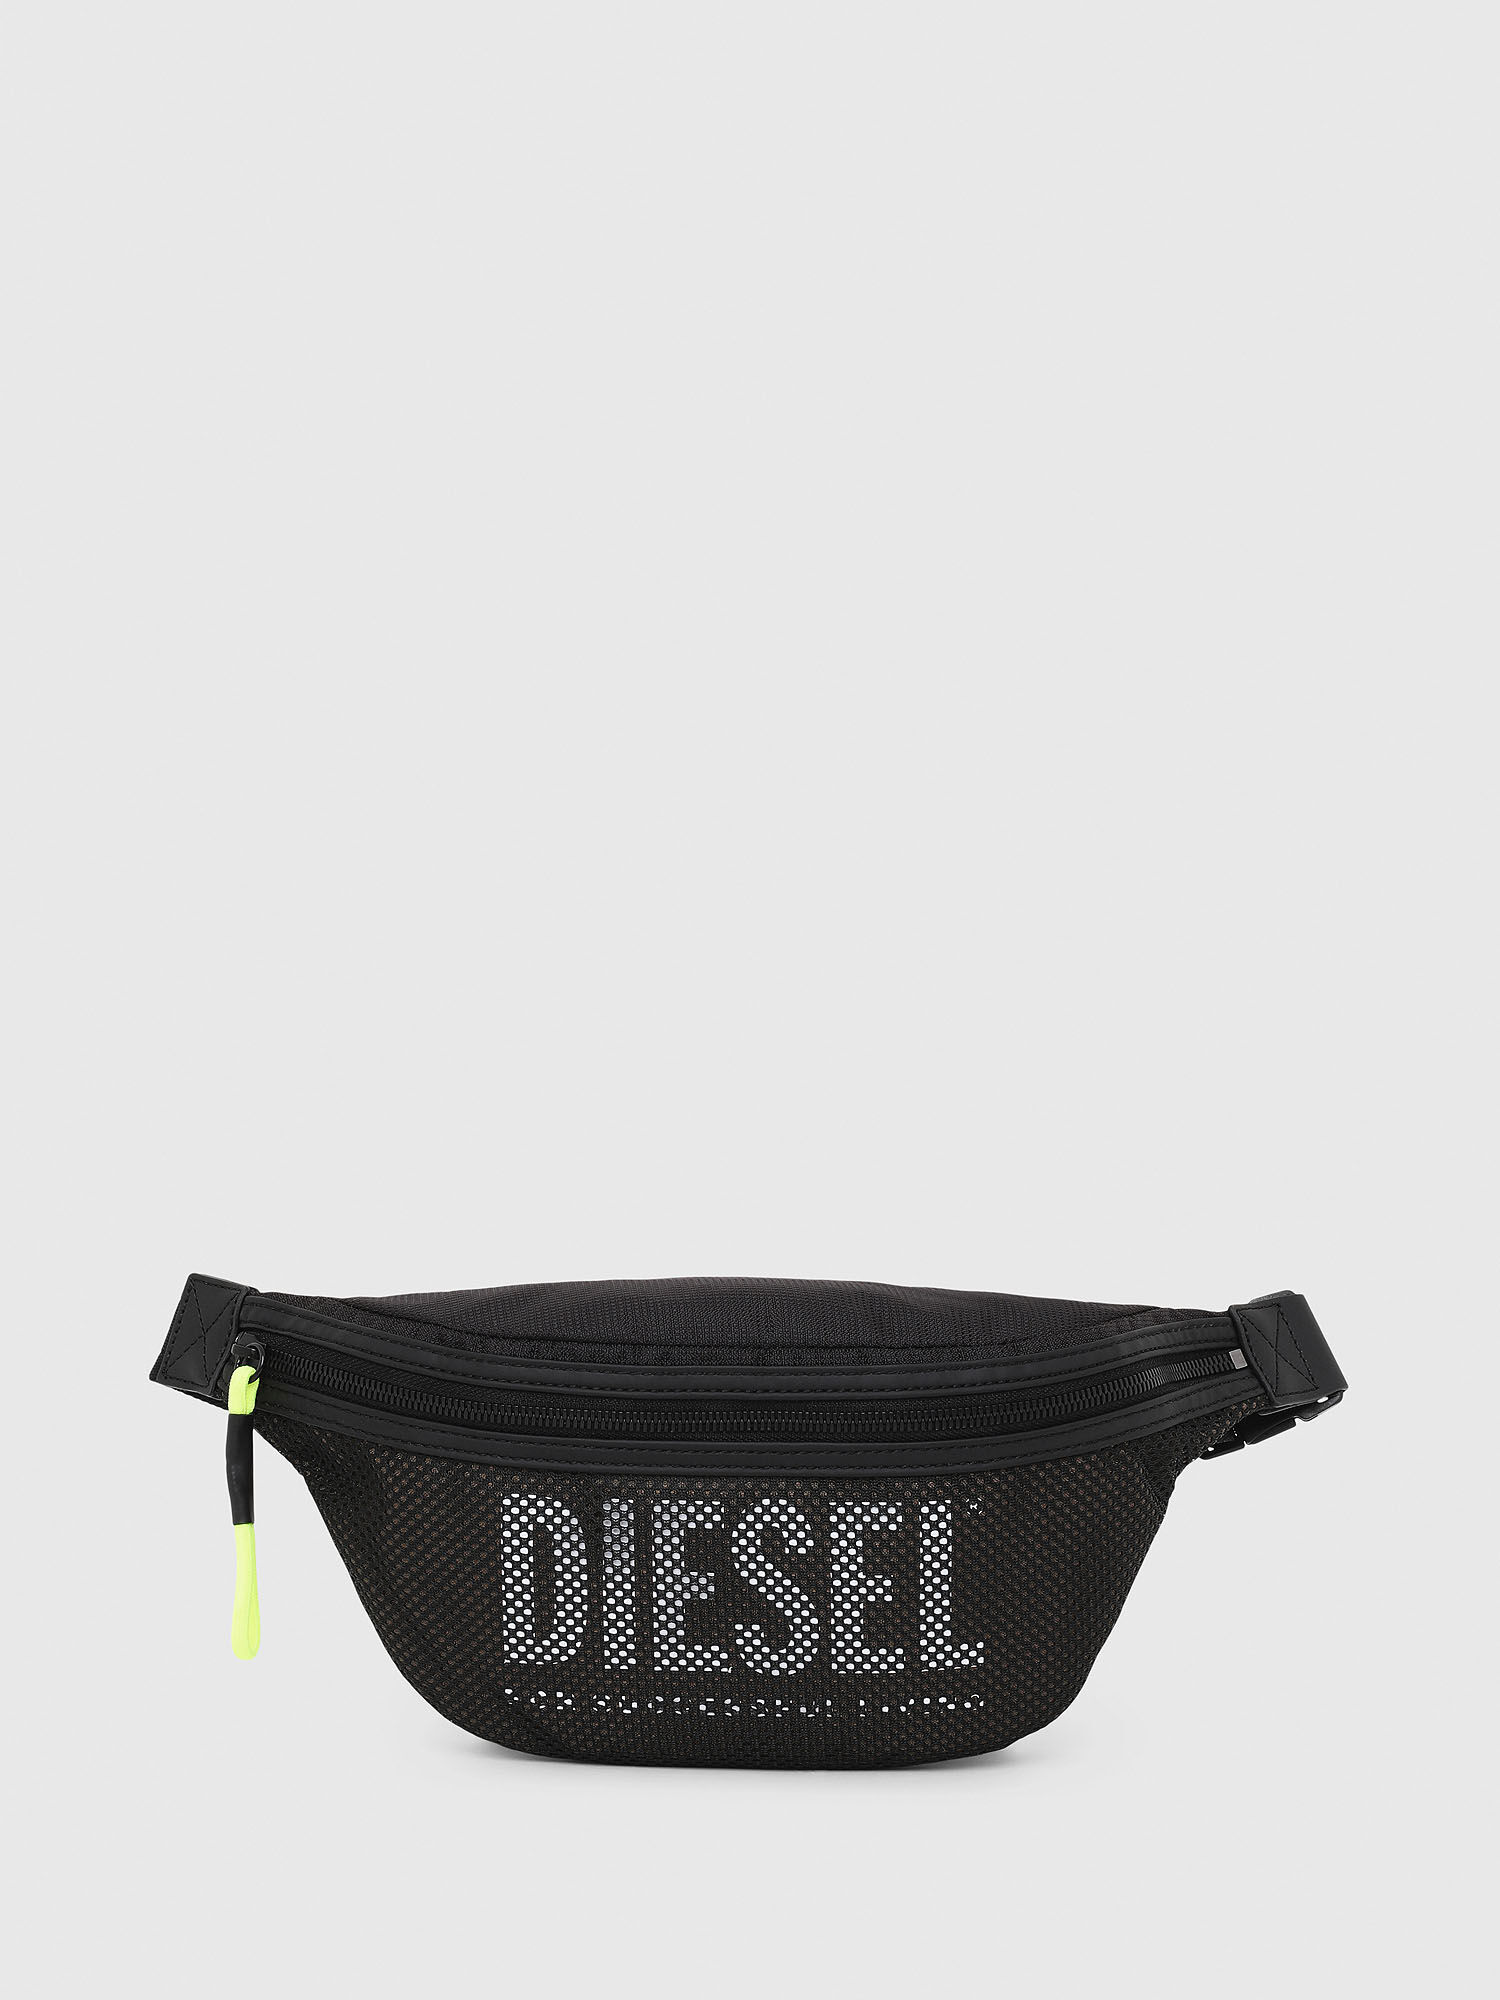 Diesel - LONIGO,  - Image 1